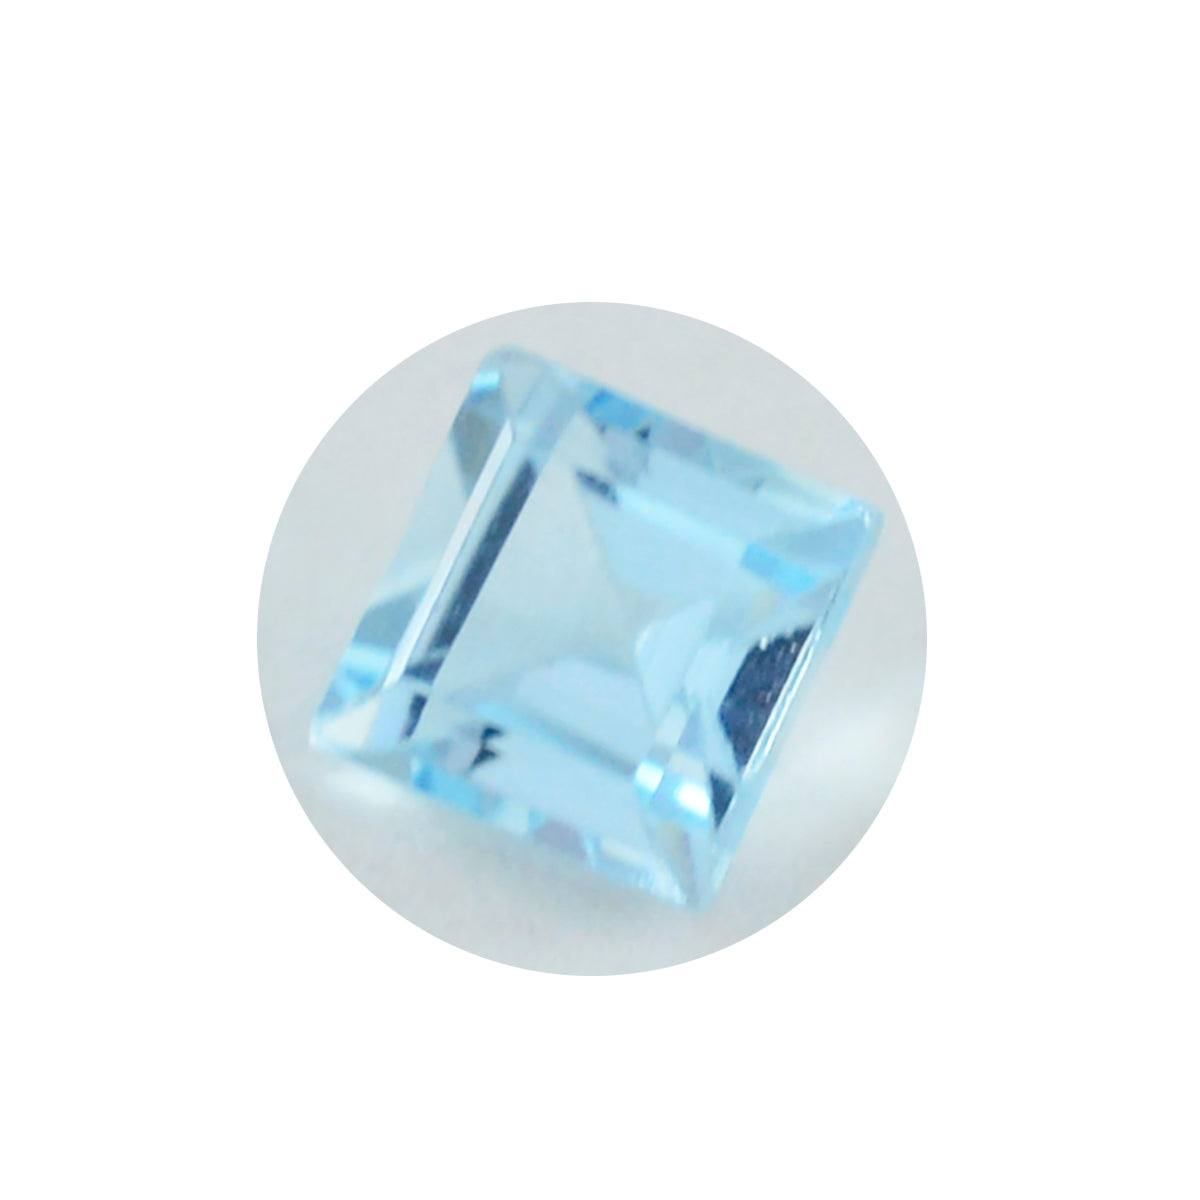 riyogems 1шт натуральный голубой топаз ограненный 13x13 мм квадратной формы драгоценные камни отличного качества